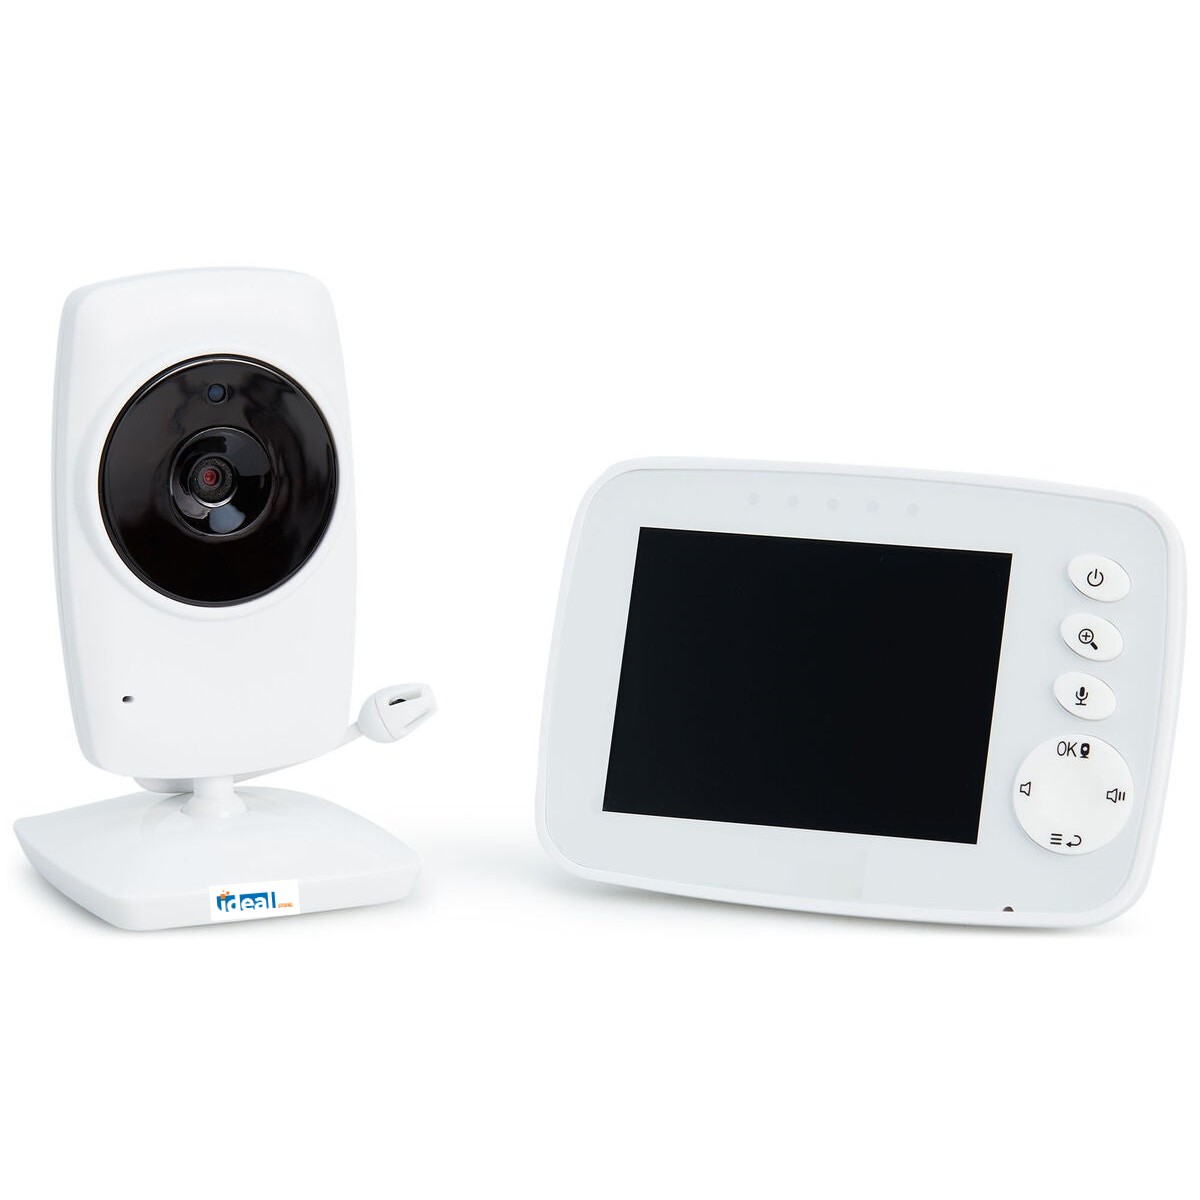 Sistem de Monitorizare Video si Audio Baby SuperCam idealStore, Ecran 3.2 inch, Comunicare Bidirectionala, Mod Eco, Cantece de Leagan, Monitor de Temparatura, Vedere Noctura, Rotire Orizontala/Verticala, Wireless